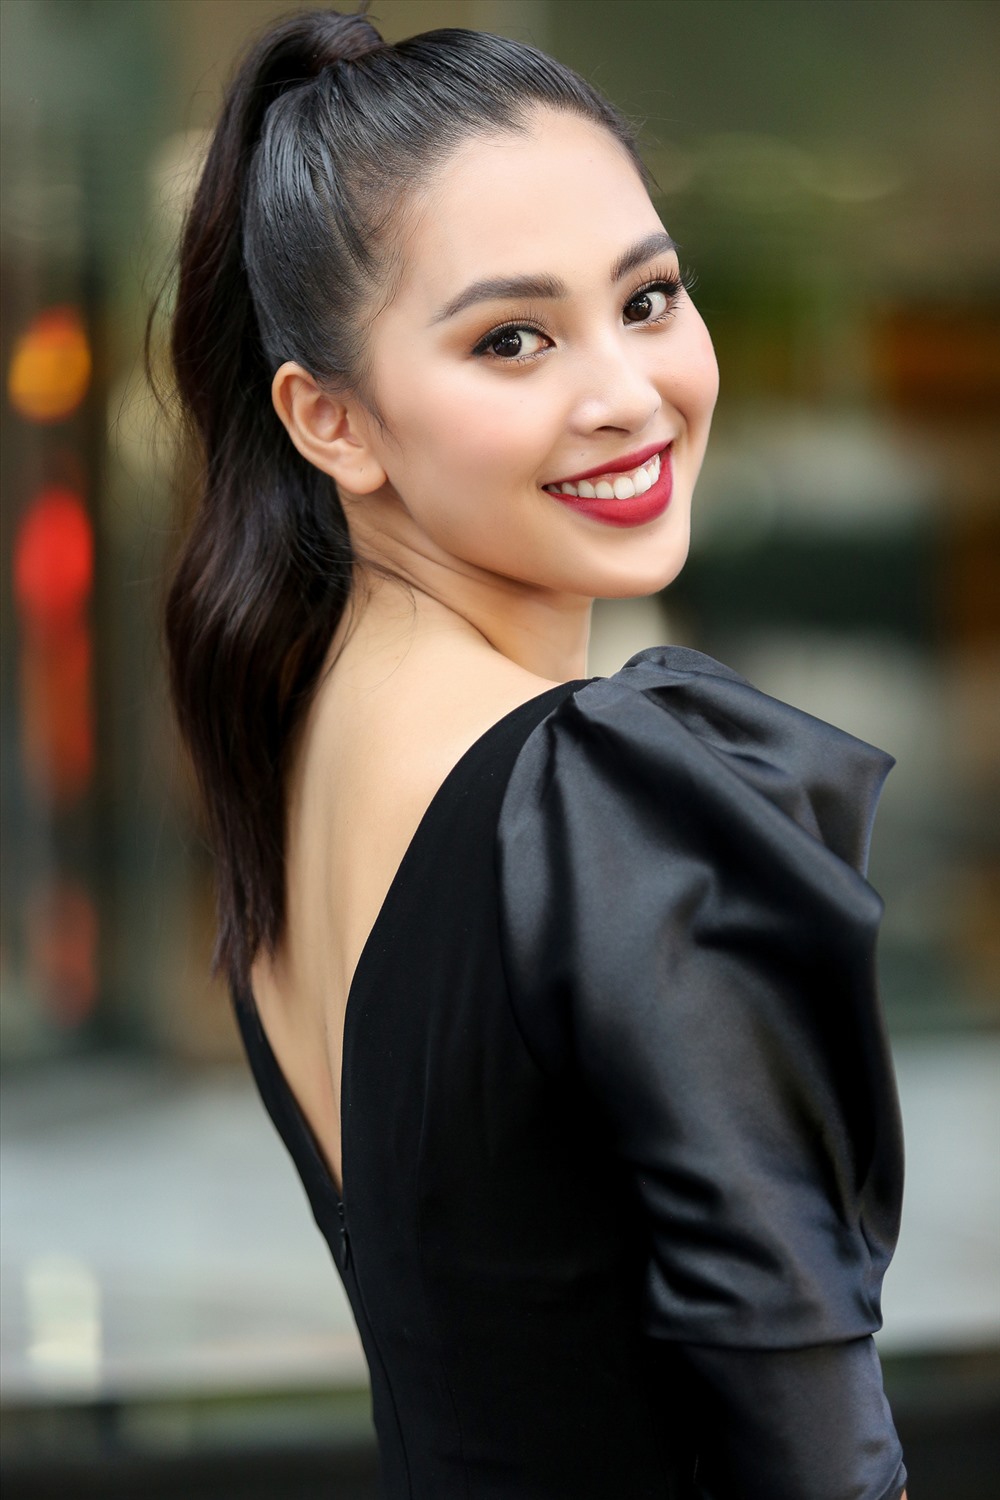 “Tiểu Vy là hoa hậu đẹp nhất trong mắt tôi“, Hoa hậu Mai Phương Thúy dành lời khen cho Hoa hậu Việt Nam 2018. Ảnh: MWVN.